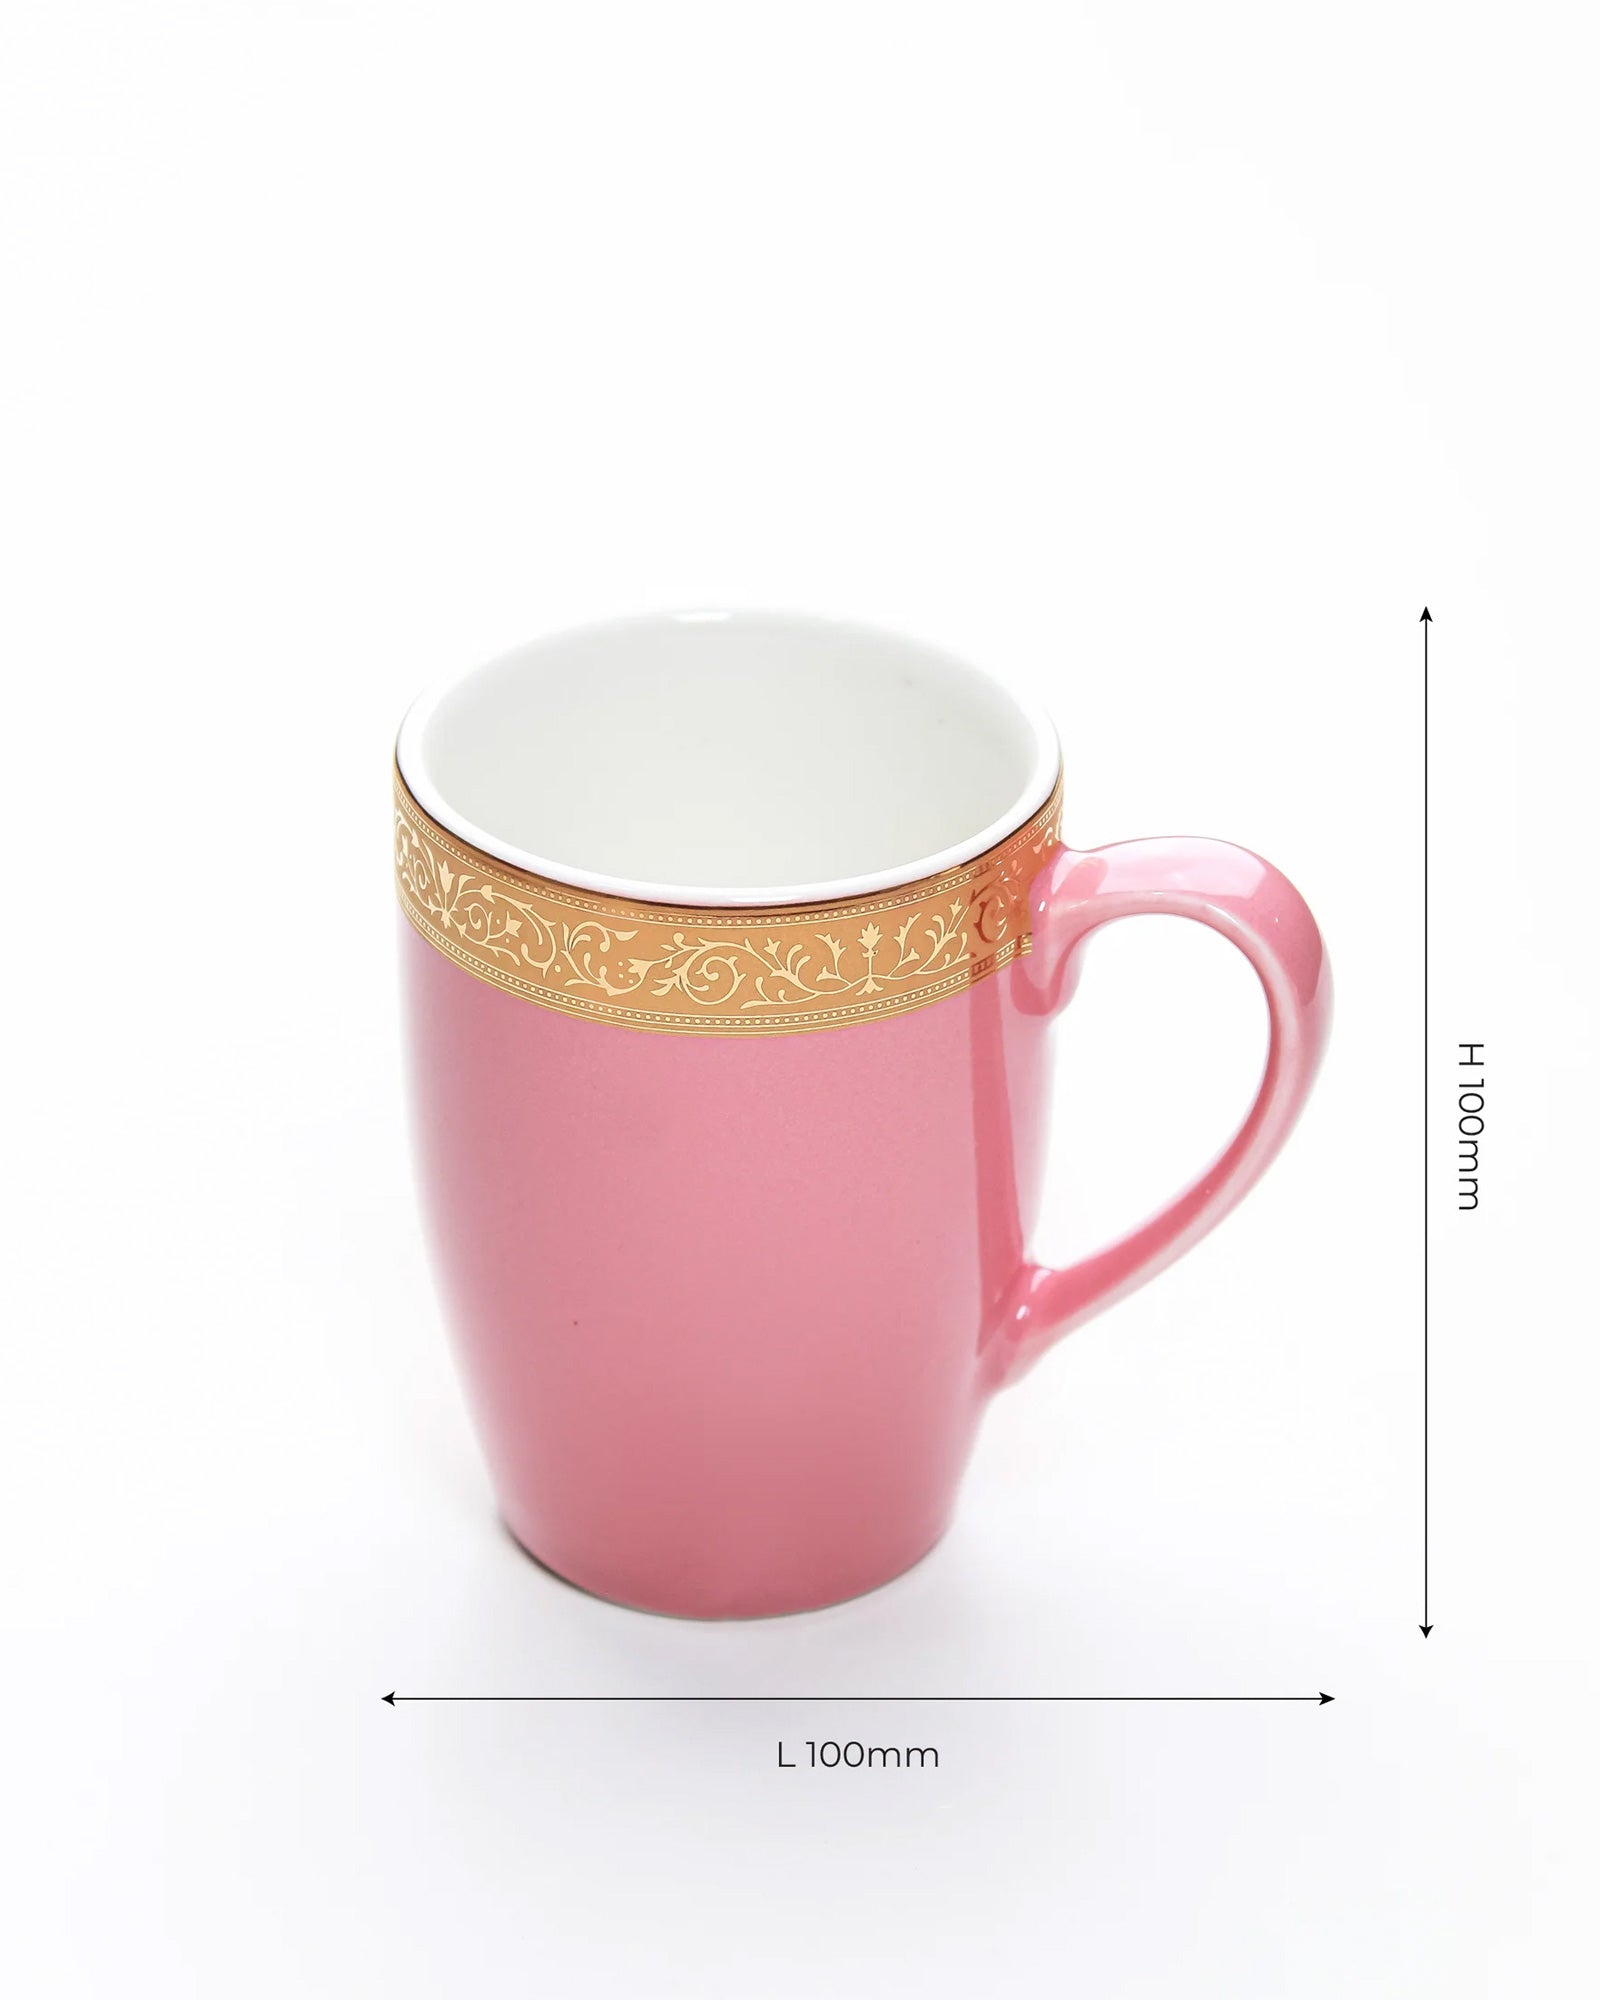 BLOOMING DALHIA / Set of 2 * 230ml || Scarlet: Premium Porcelain Mugs in Pastel Colors